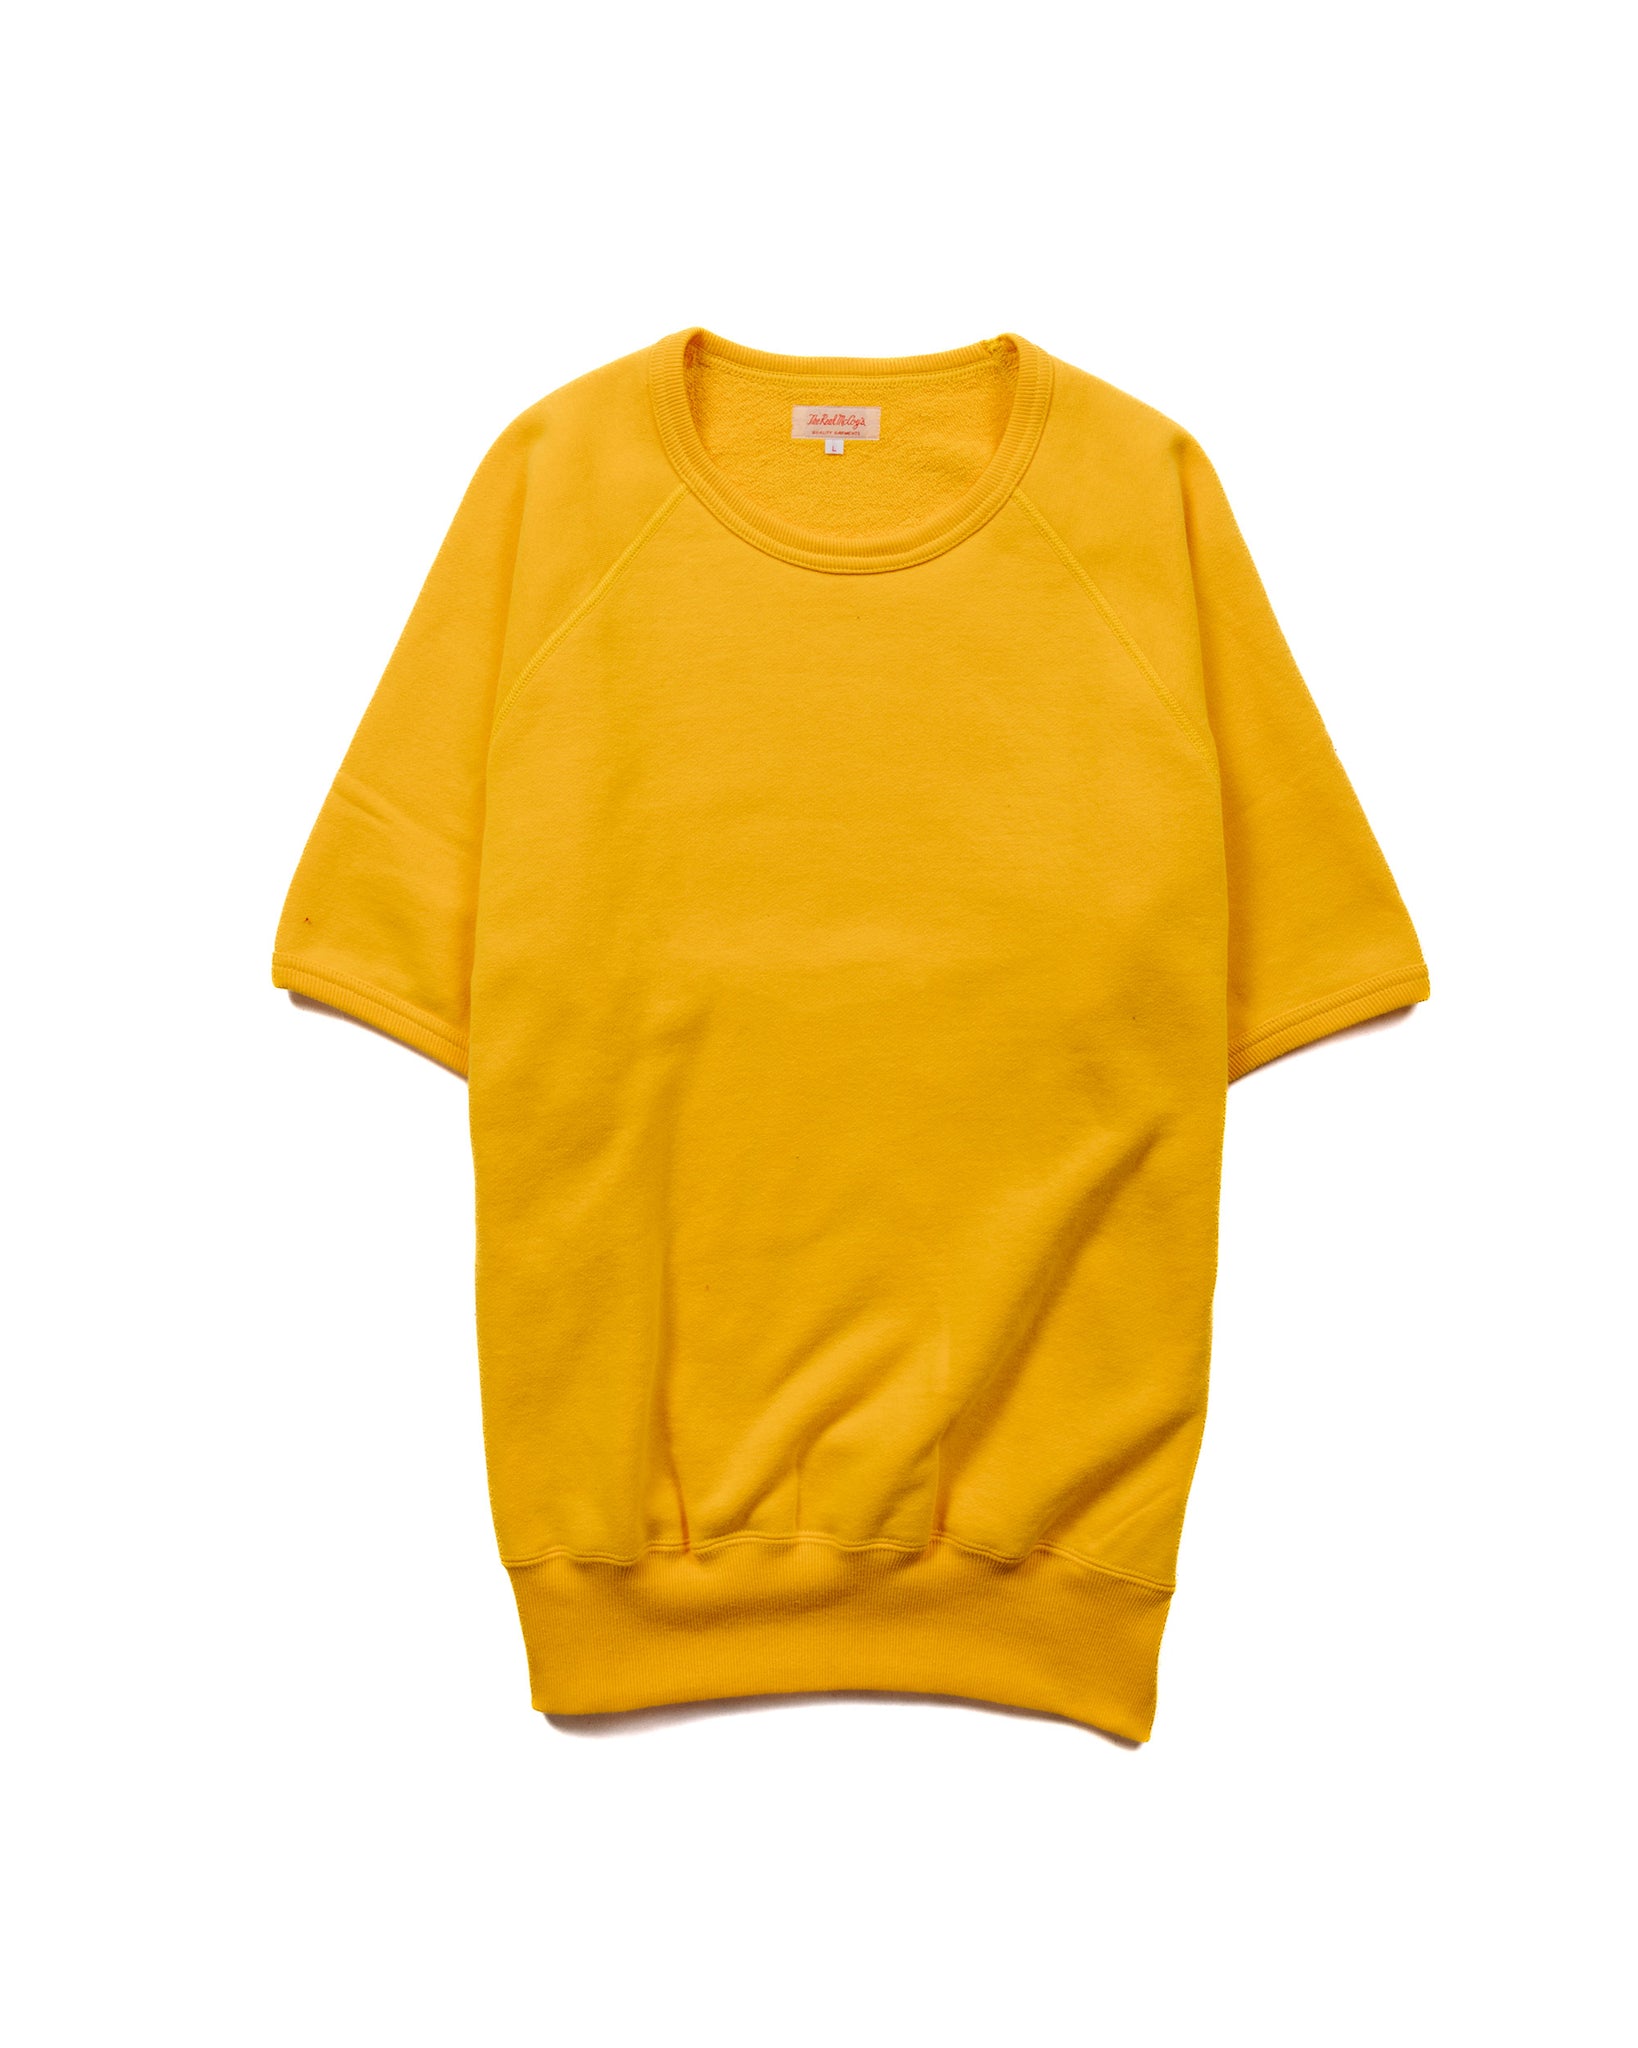 The Real McCoy’s MC20005 9oz. Loopwheel S/S Sweatshirt Yellow